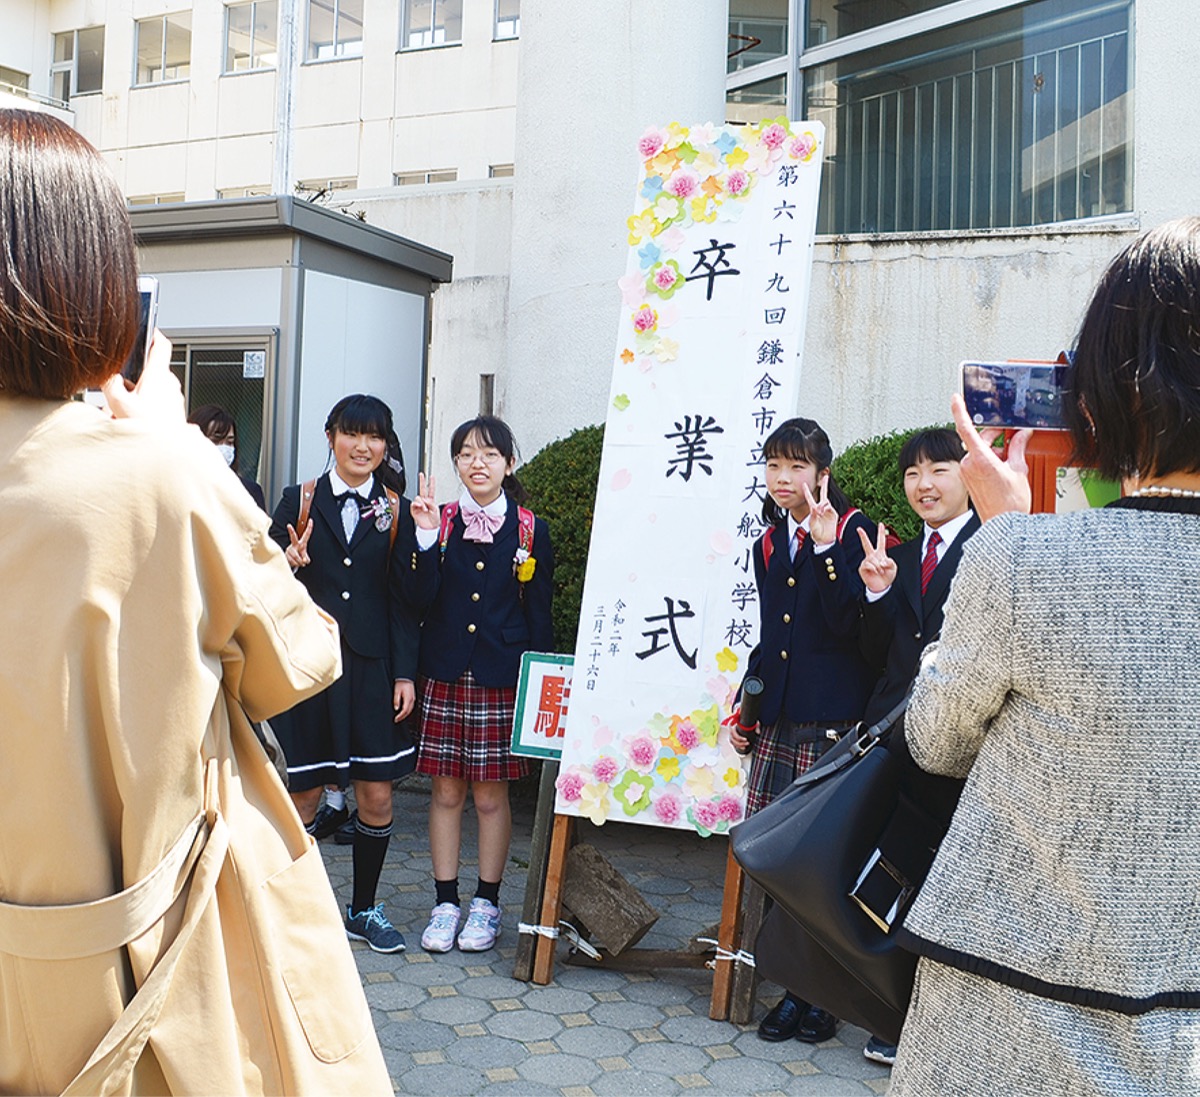 保護者１人まで で卒業式 小中学校で延期 縮小開催 鎌倉 タウンニュース